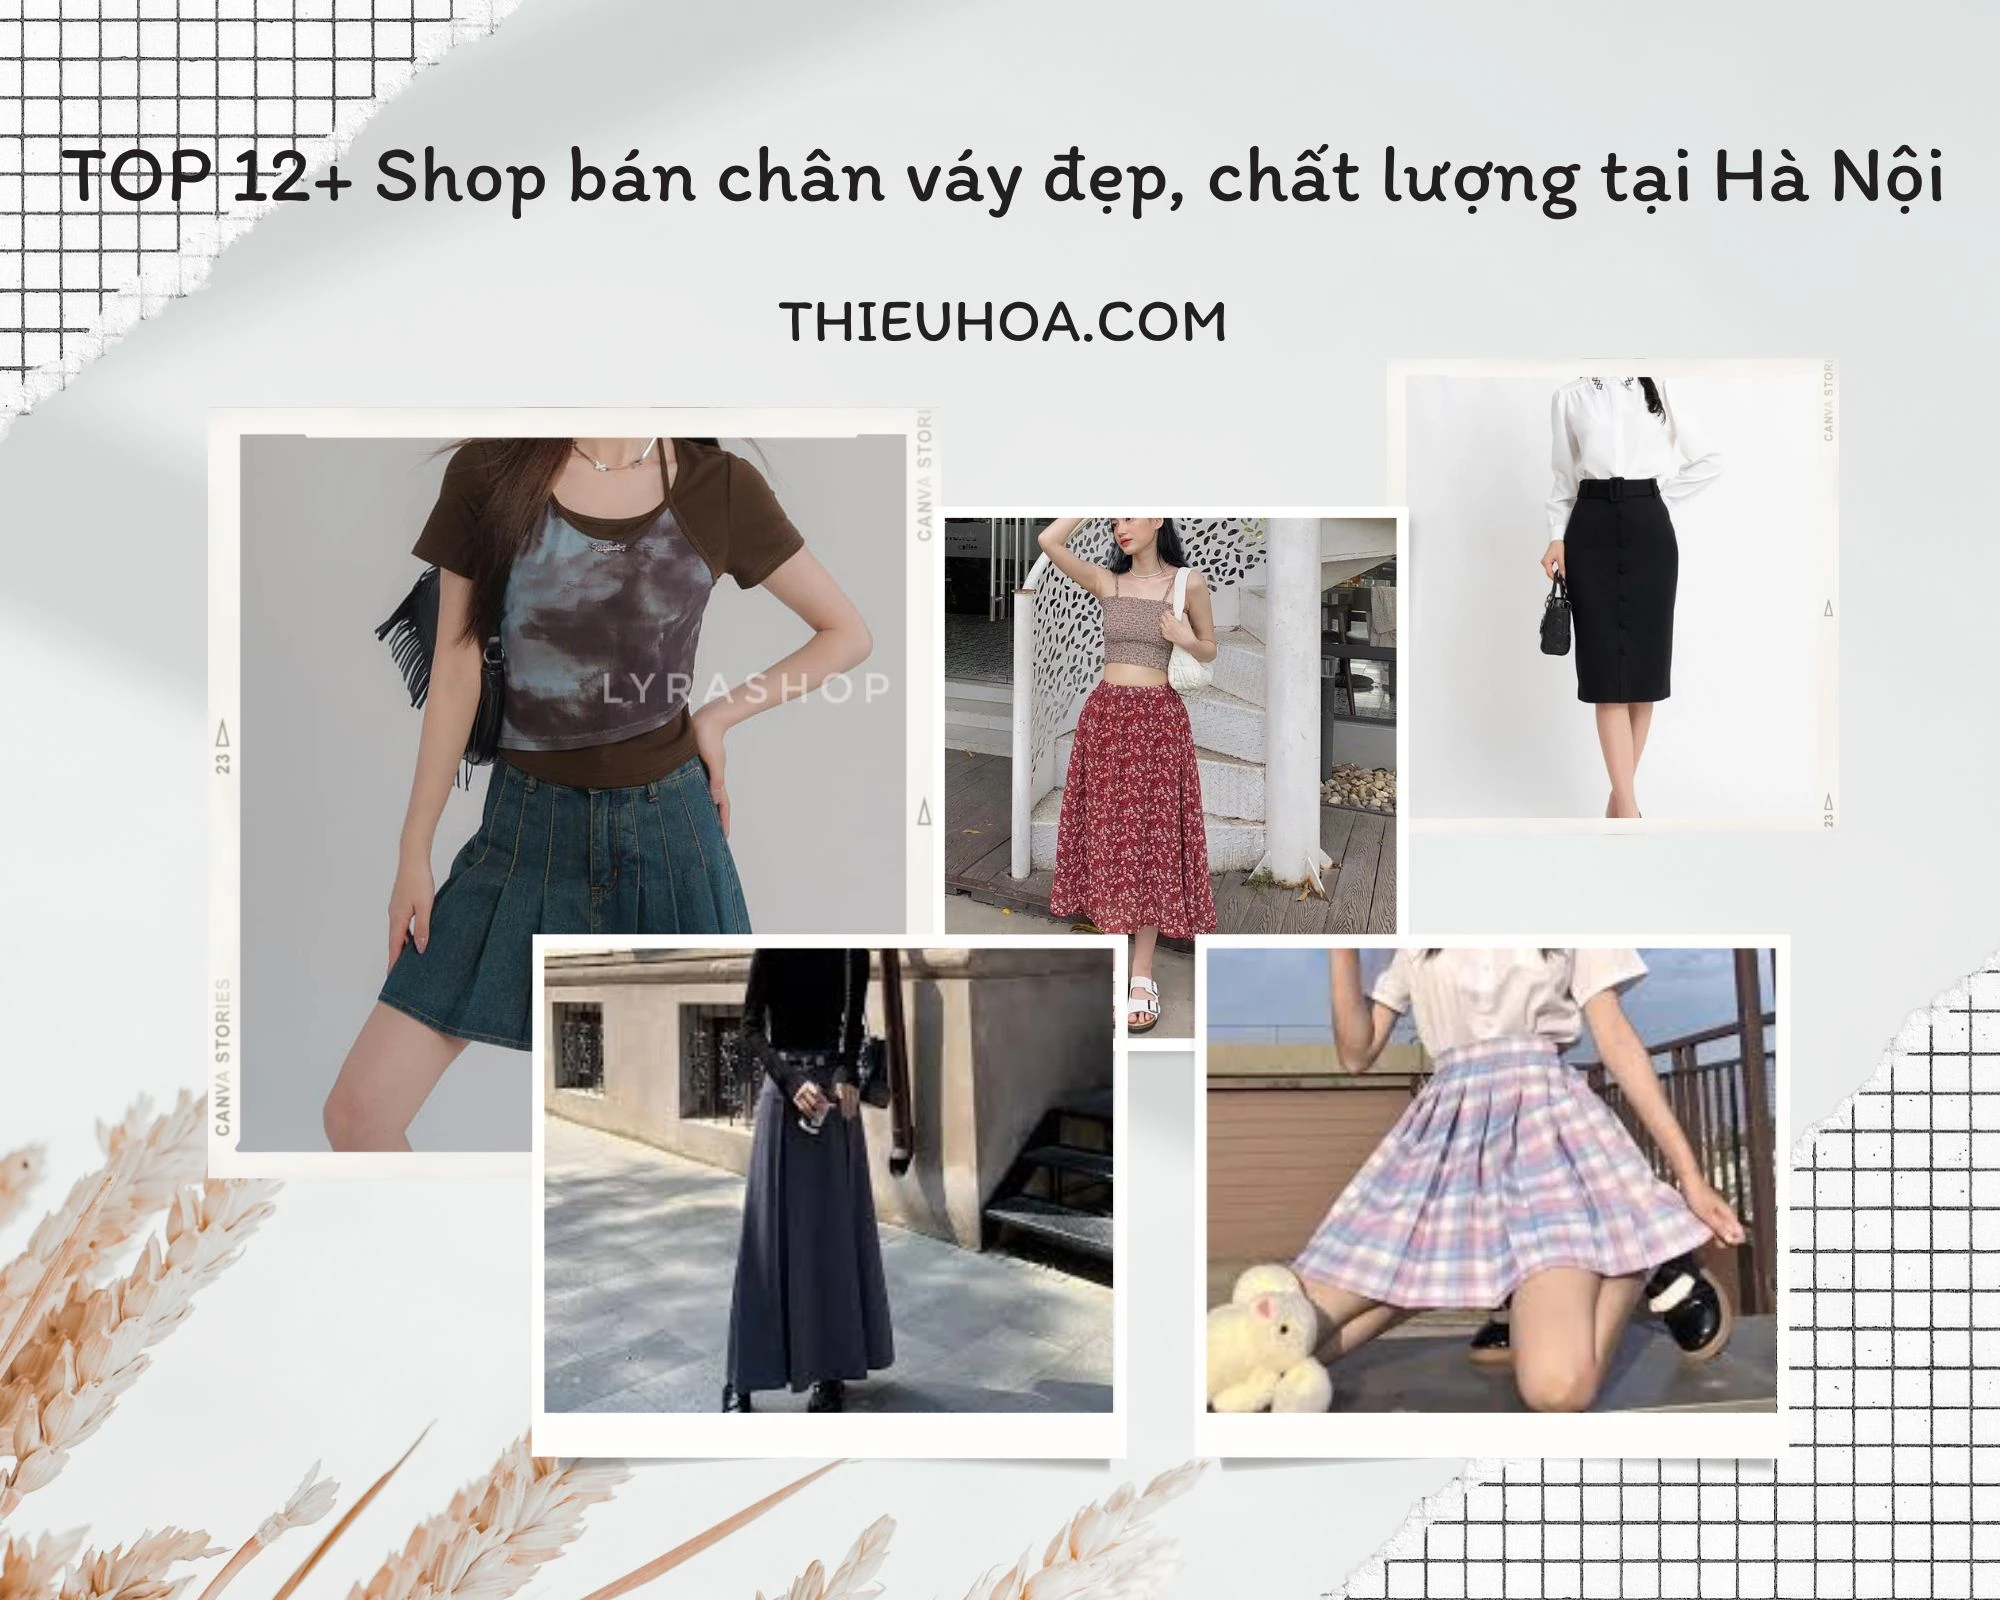 TOP 12+ Shop bán chân váy đẹp, chất lượng tại Hà Nội